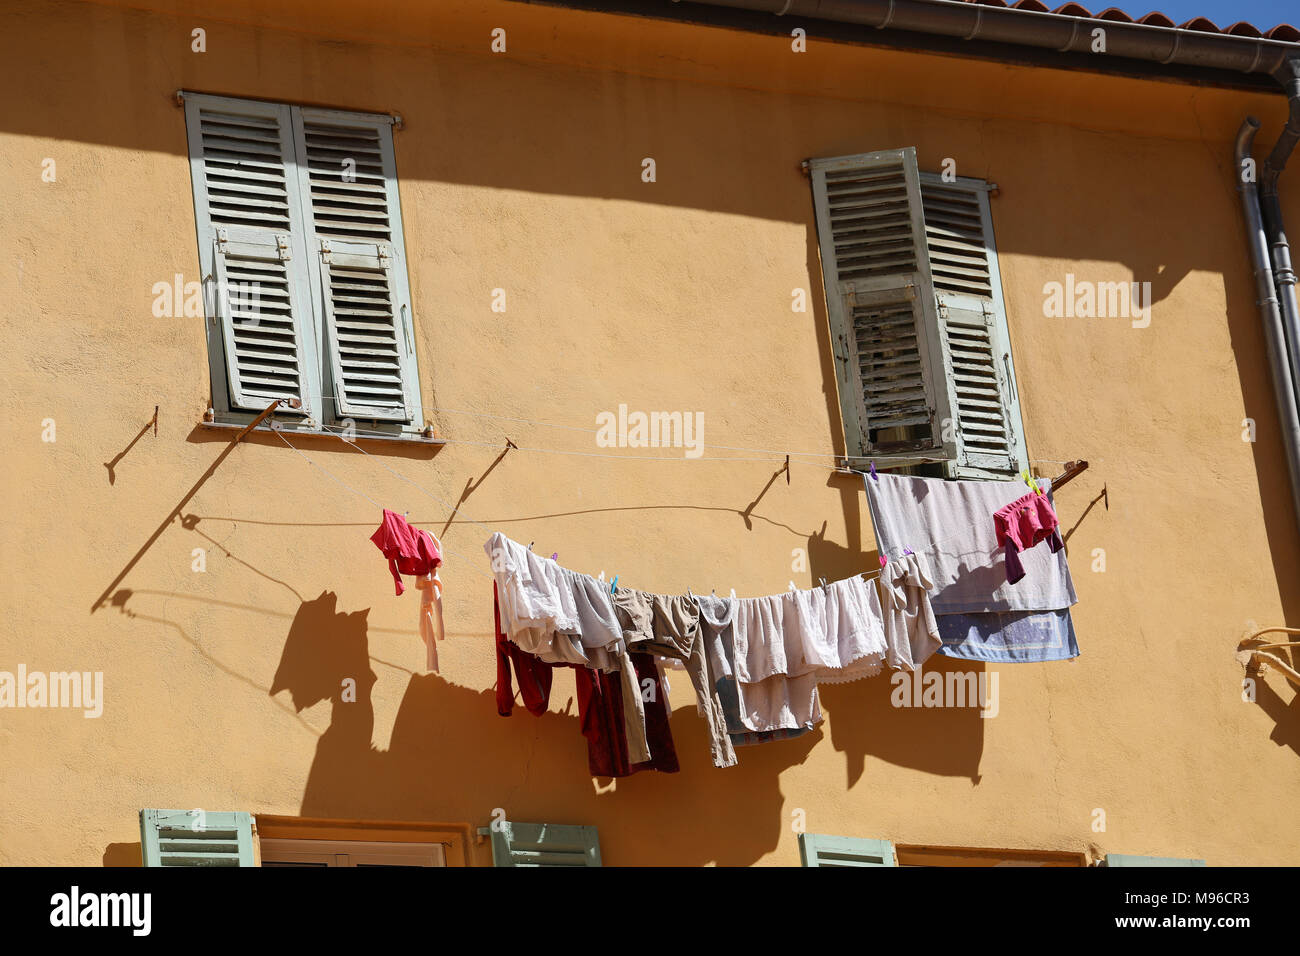 Das Trocknen von Wäsche Wäsche hängt draußen vor dem Fenster eines alten  Gebäudes in der Altstadt von Menton, Frankreich / Französische Riviera  Stockfotografie - Alamy